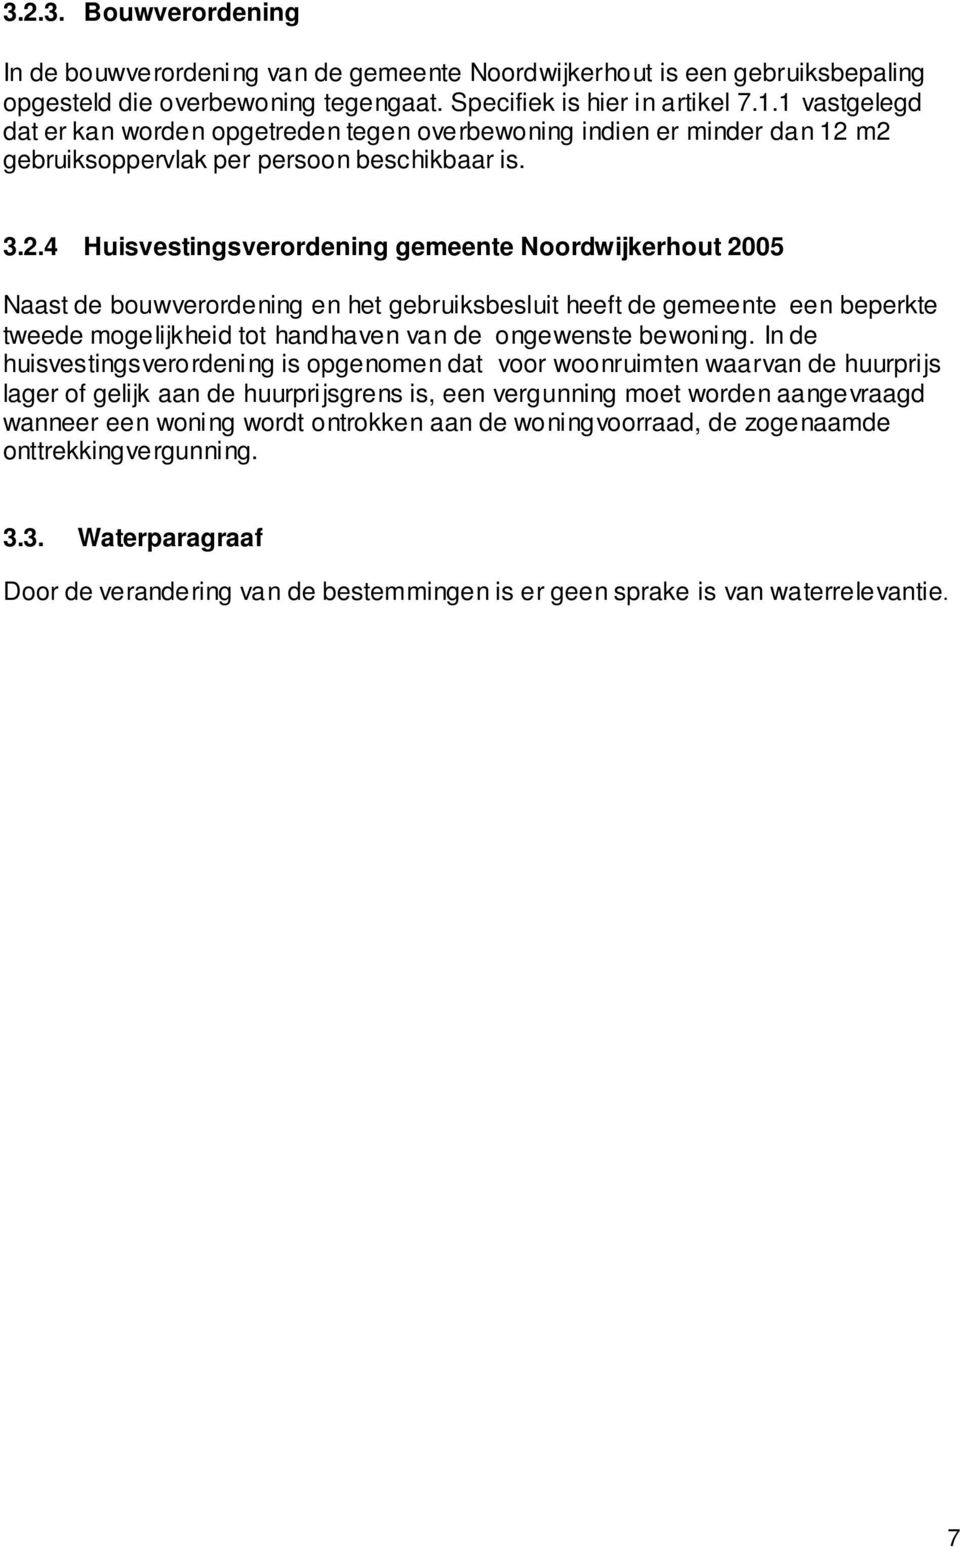 m2 gebruiksoppervlak per persoon beschikbaar is. 3.2.4 Huisvestingsverordening gemeente Noordwijkerhout 2005 Naast de bouwverordening en het gebruiksbesluit heeft de gemeente een beperkte tweede mogelijkheid tot handhaven van de ongewenste bewoning.